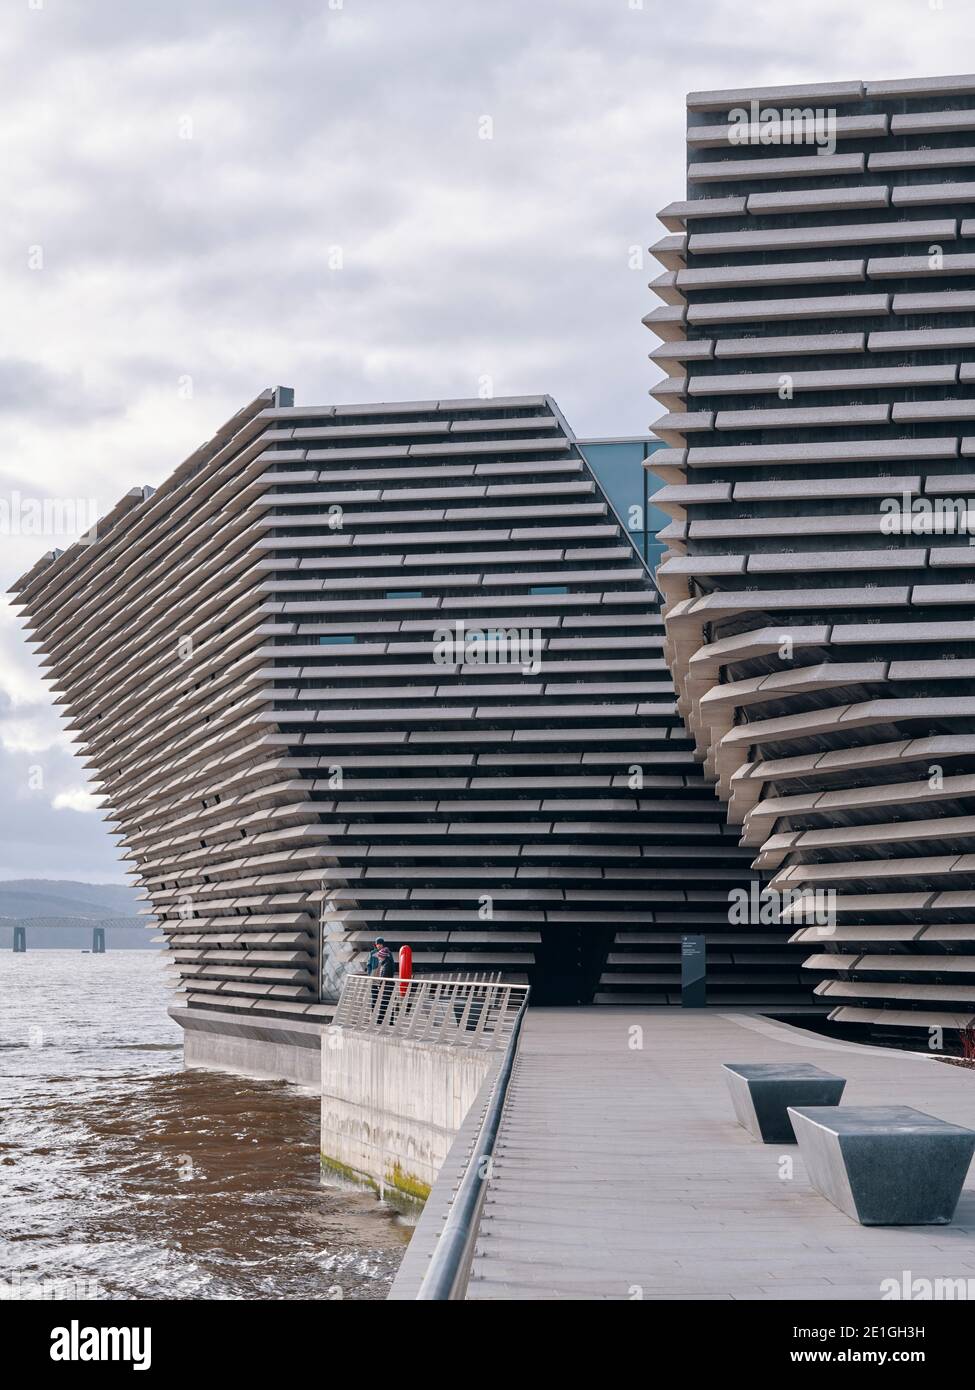 Vista esterna del V&A Dundee dell'architetto giapponese Kengo Kuma, un museo di design sul lungomare di Dundee, Scozia, Regno Unito. Foto Stock